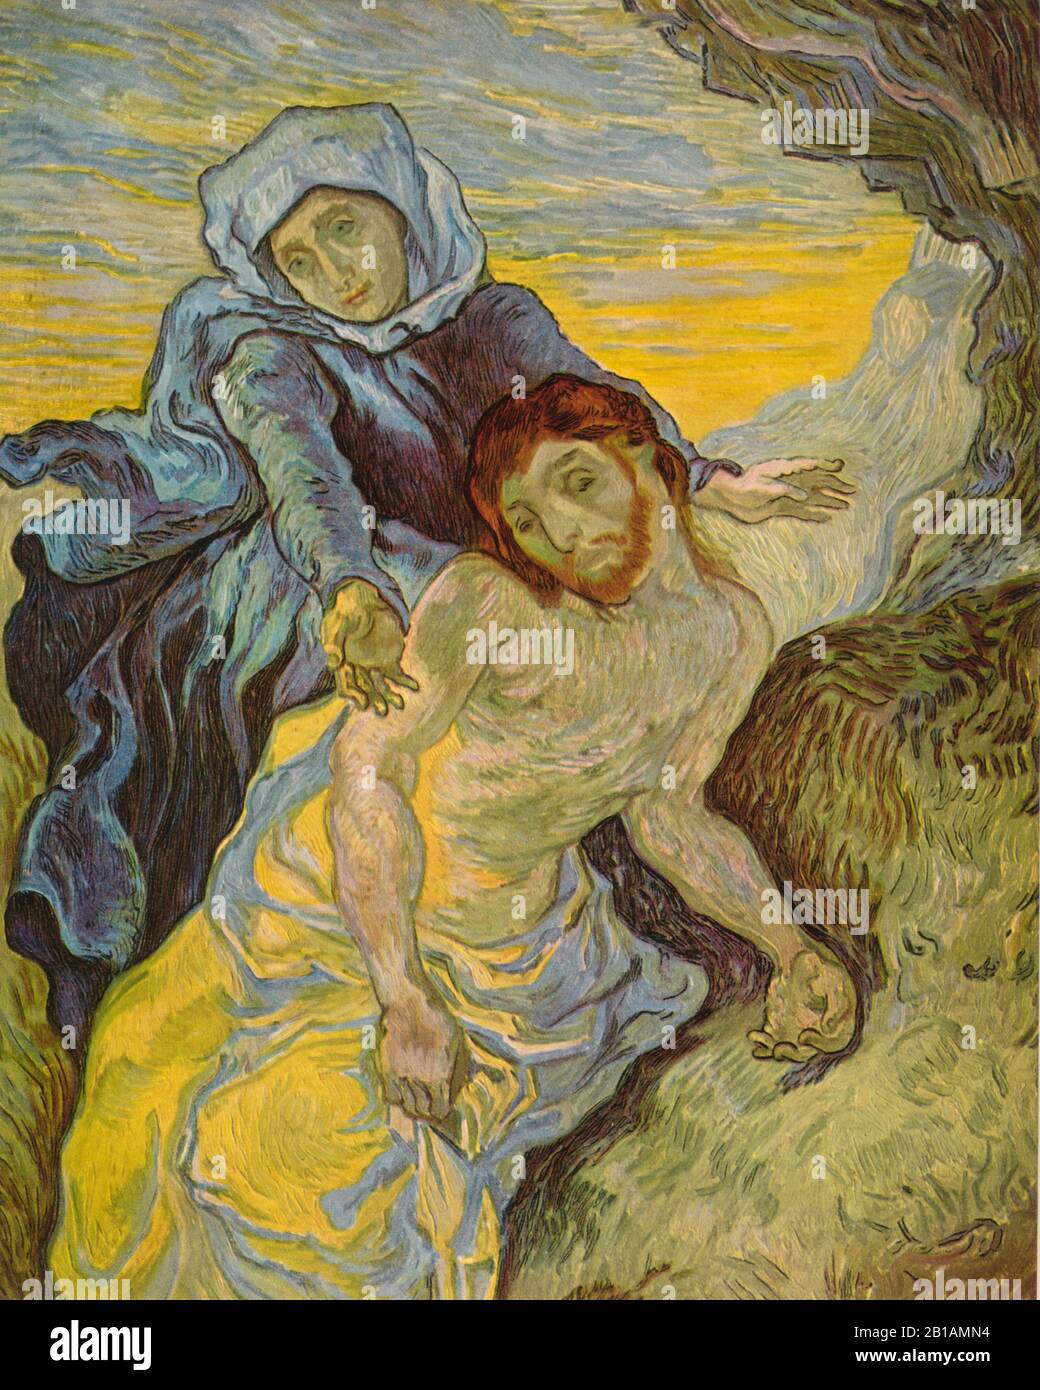 Pieta 1889 dipinto di Vincent van Gogh - Immagine Ad Altissima risoluzione e qualità Foto Stock